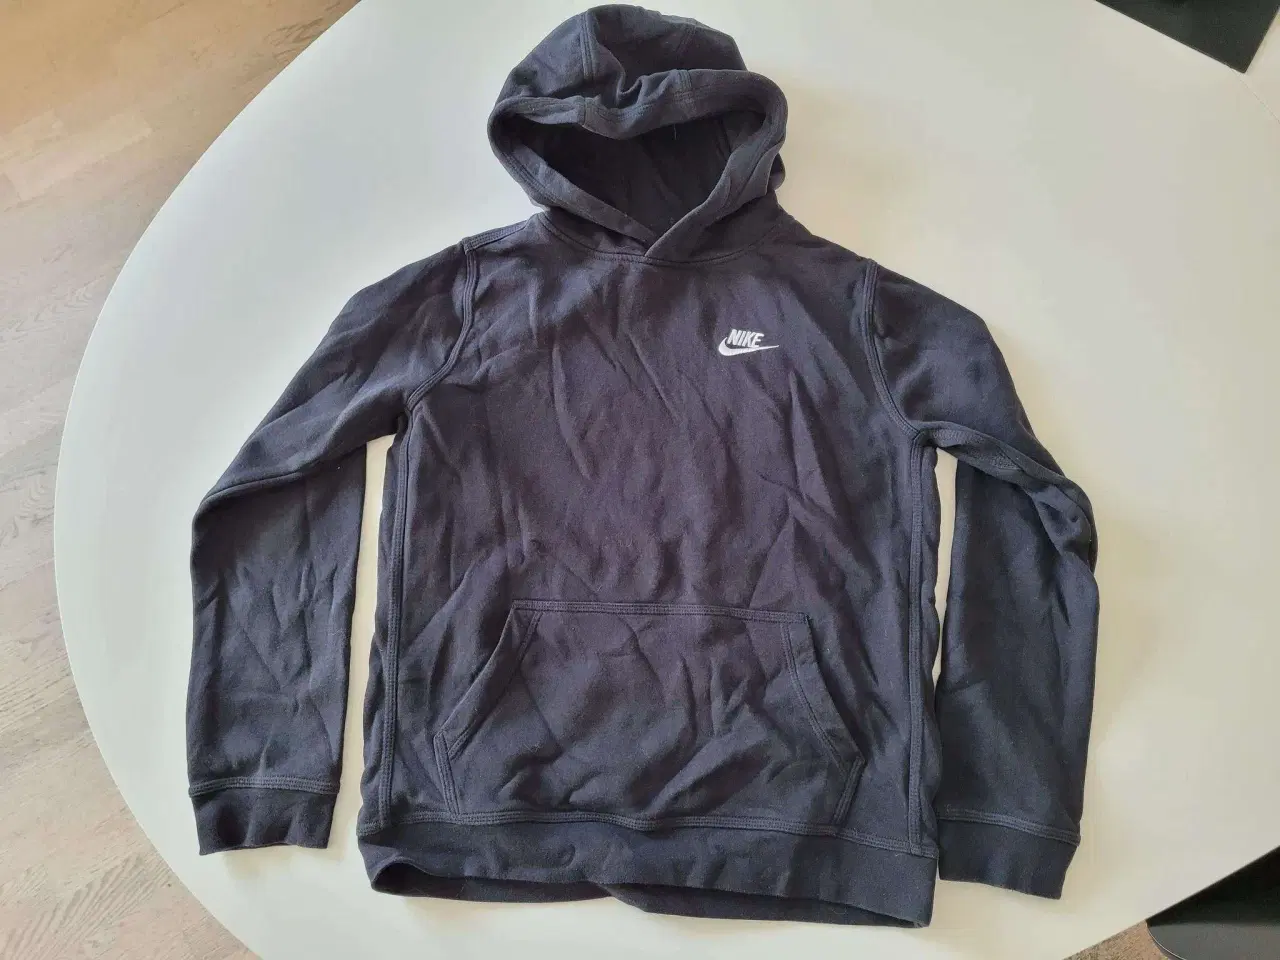 Billede 2 - Nike hoodie og Nike t-shirt str. 12 år sælges